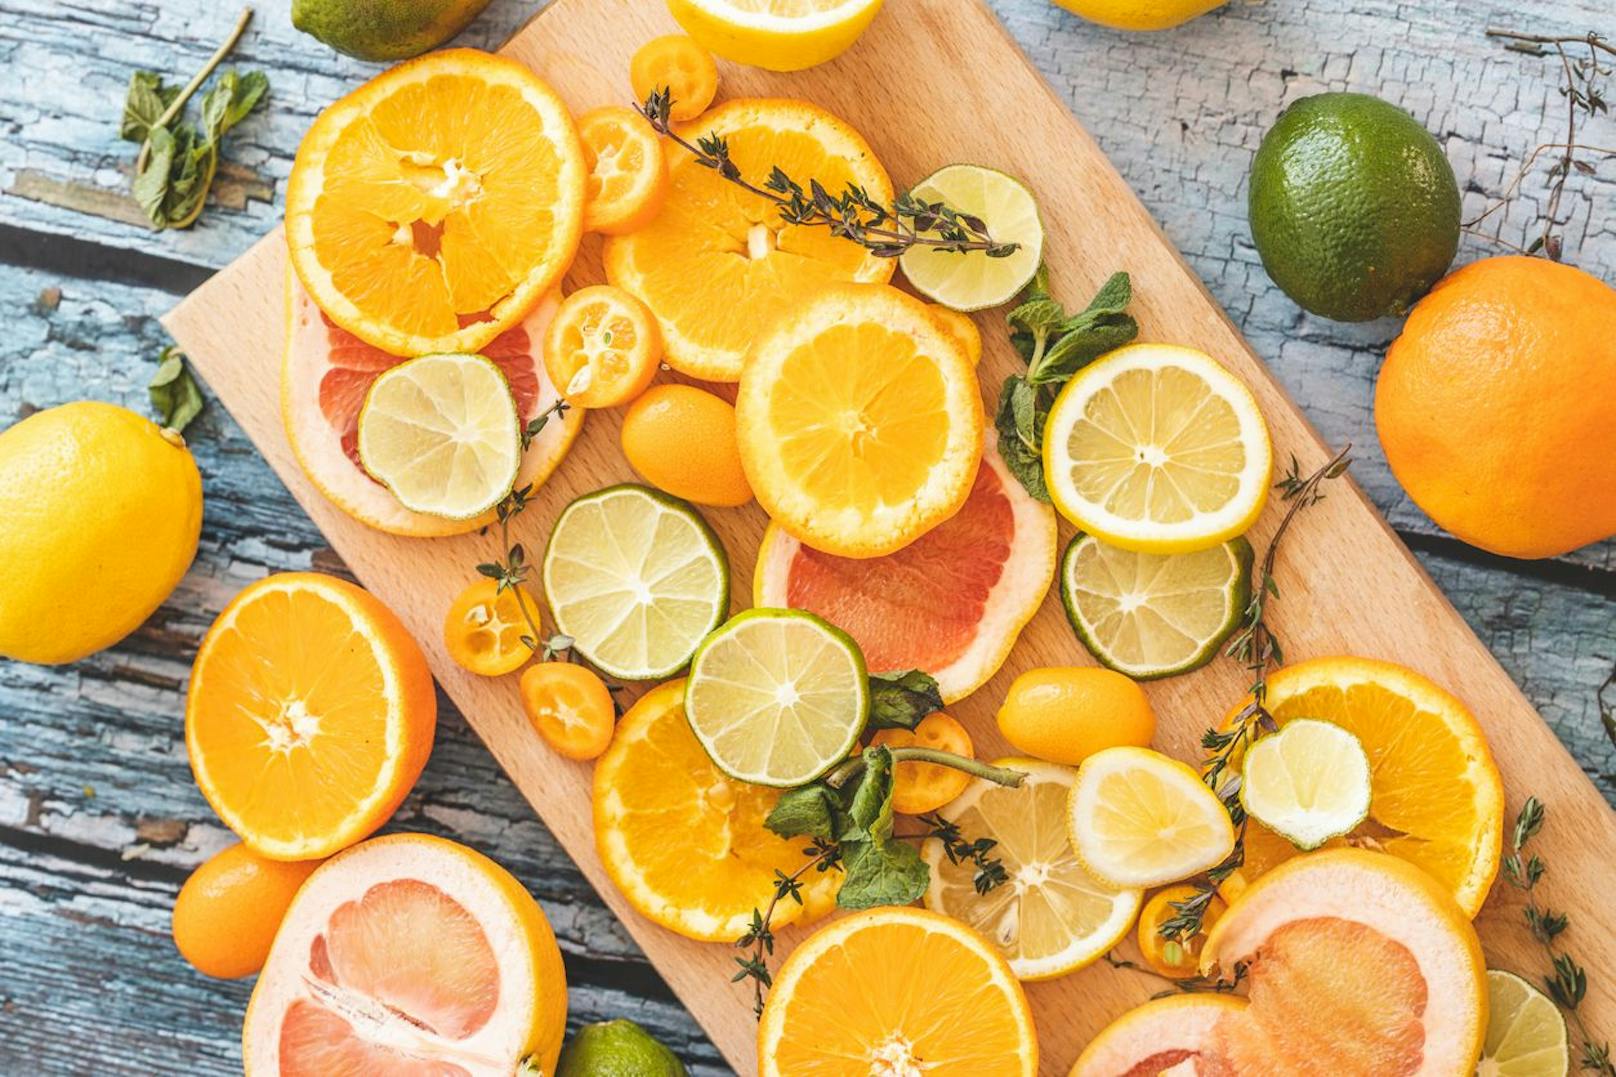 Orangen, Zitrone und so ziemlich alle weitern Lebensmittel, die Vitamin C enthalten fördern deinen Körper und kurbelt deinen Fettstoffwechsel an.